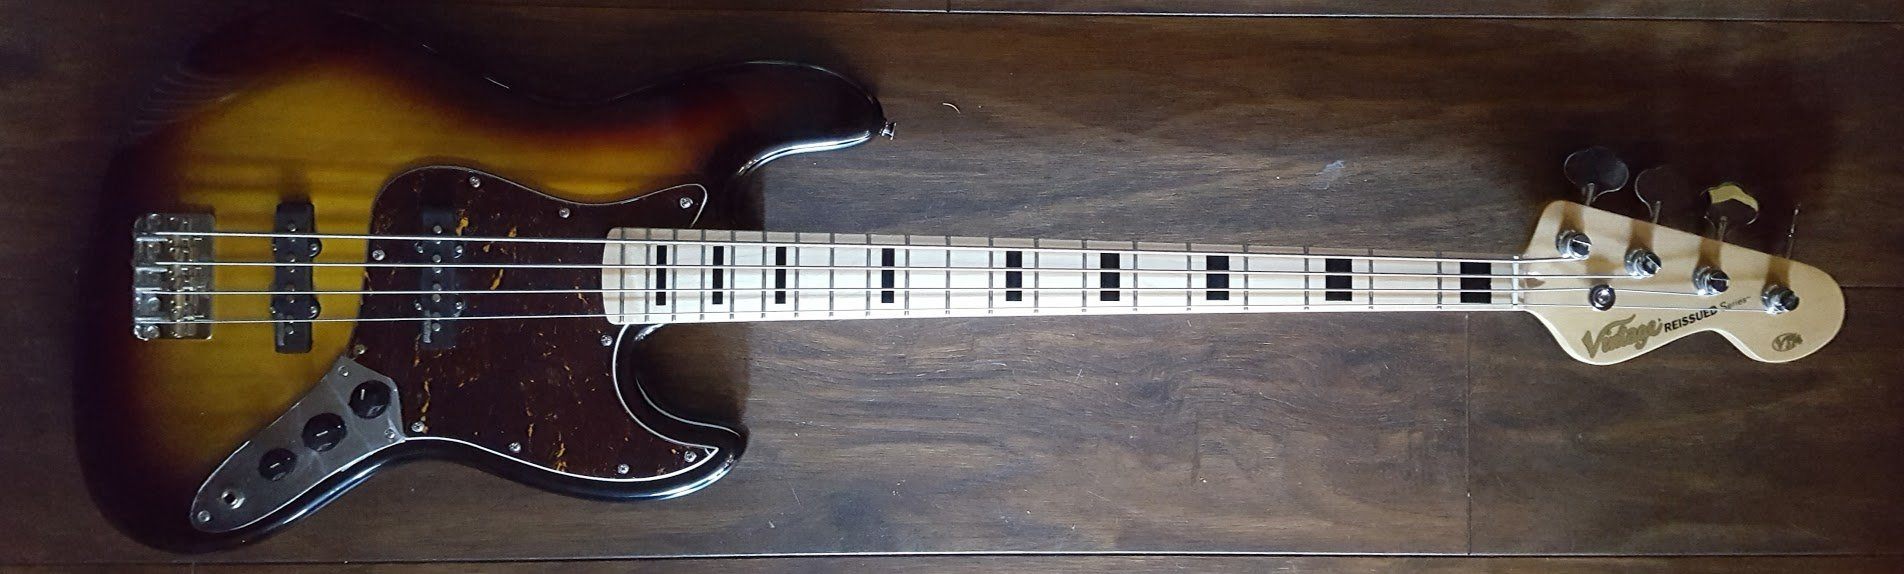 Vintage* VJ74MSSB Bass Guitar, Bass Guitar for sale at Richards Guitars.